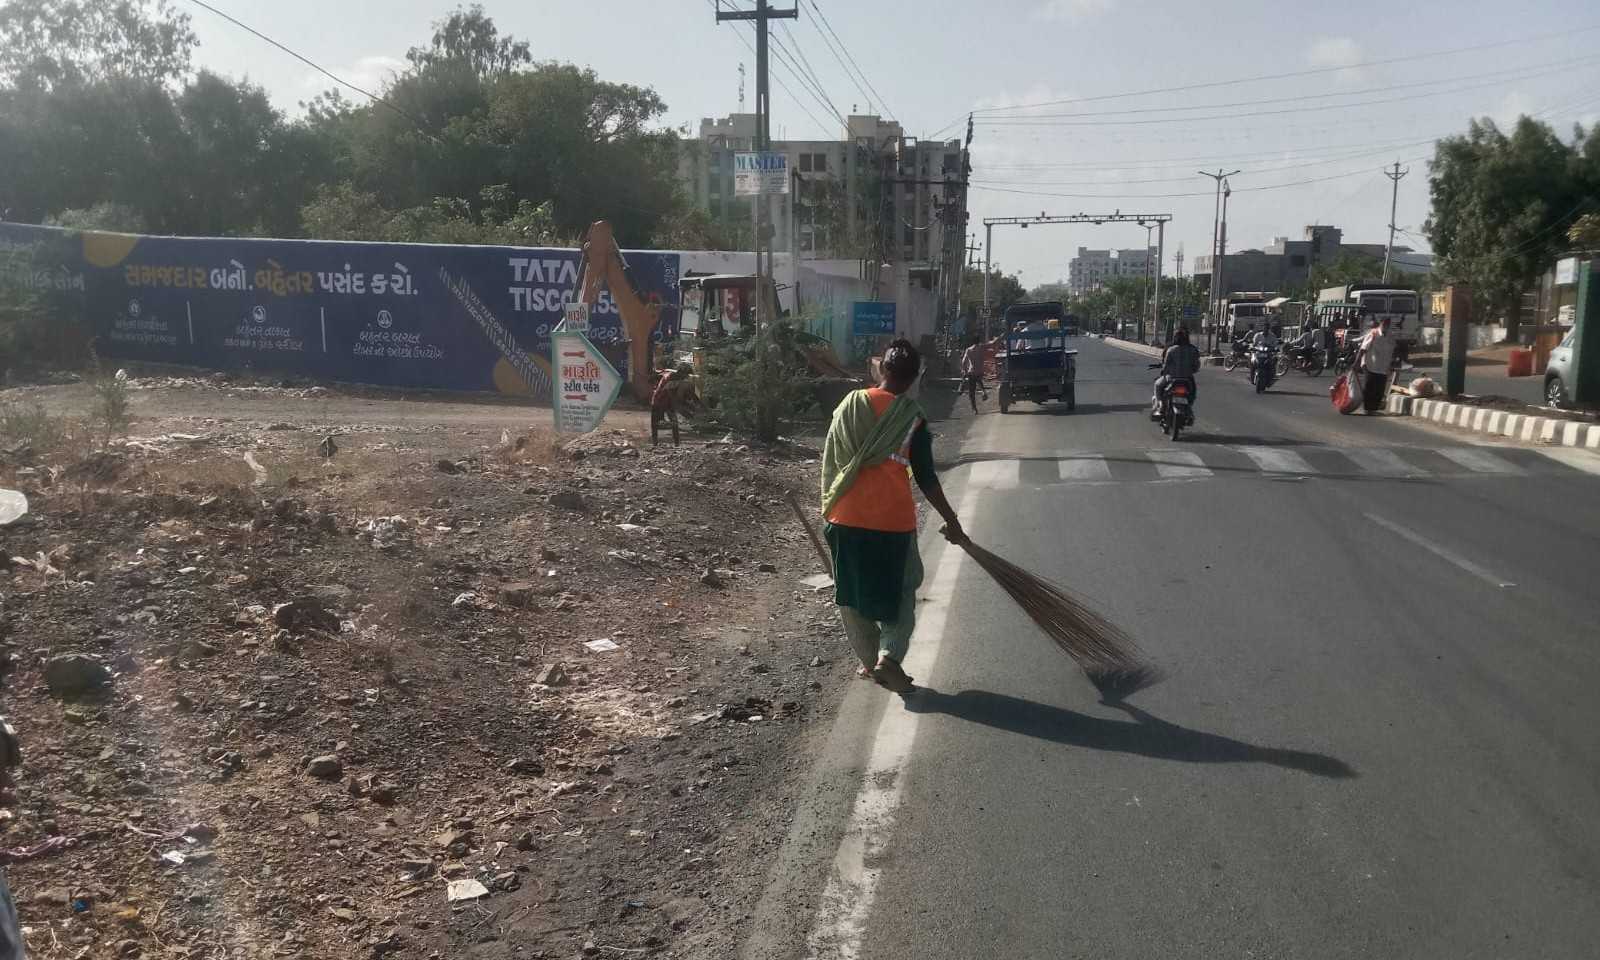 બોટાદ નગરપાલિકા દ્વારા નિર્મળ ગુજરાત 2. 0 હેઠળ નિર્મળ ગુજરાત સ્વસ્છતા પખવાડિયા અંતર્ગત બોટાદ શહેરના એન્ટ્રી પોઇન્ટની સફાઈ કામગીરી કરાઇ